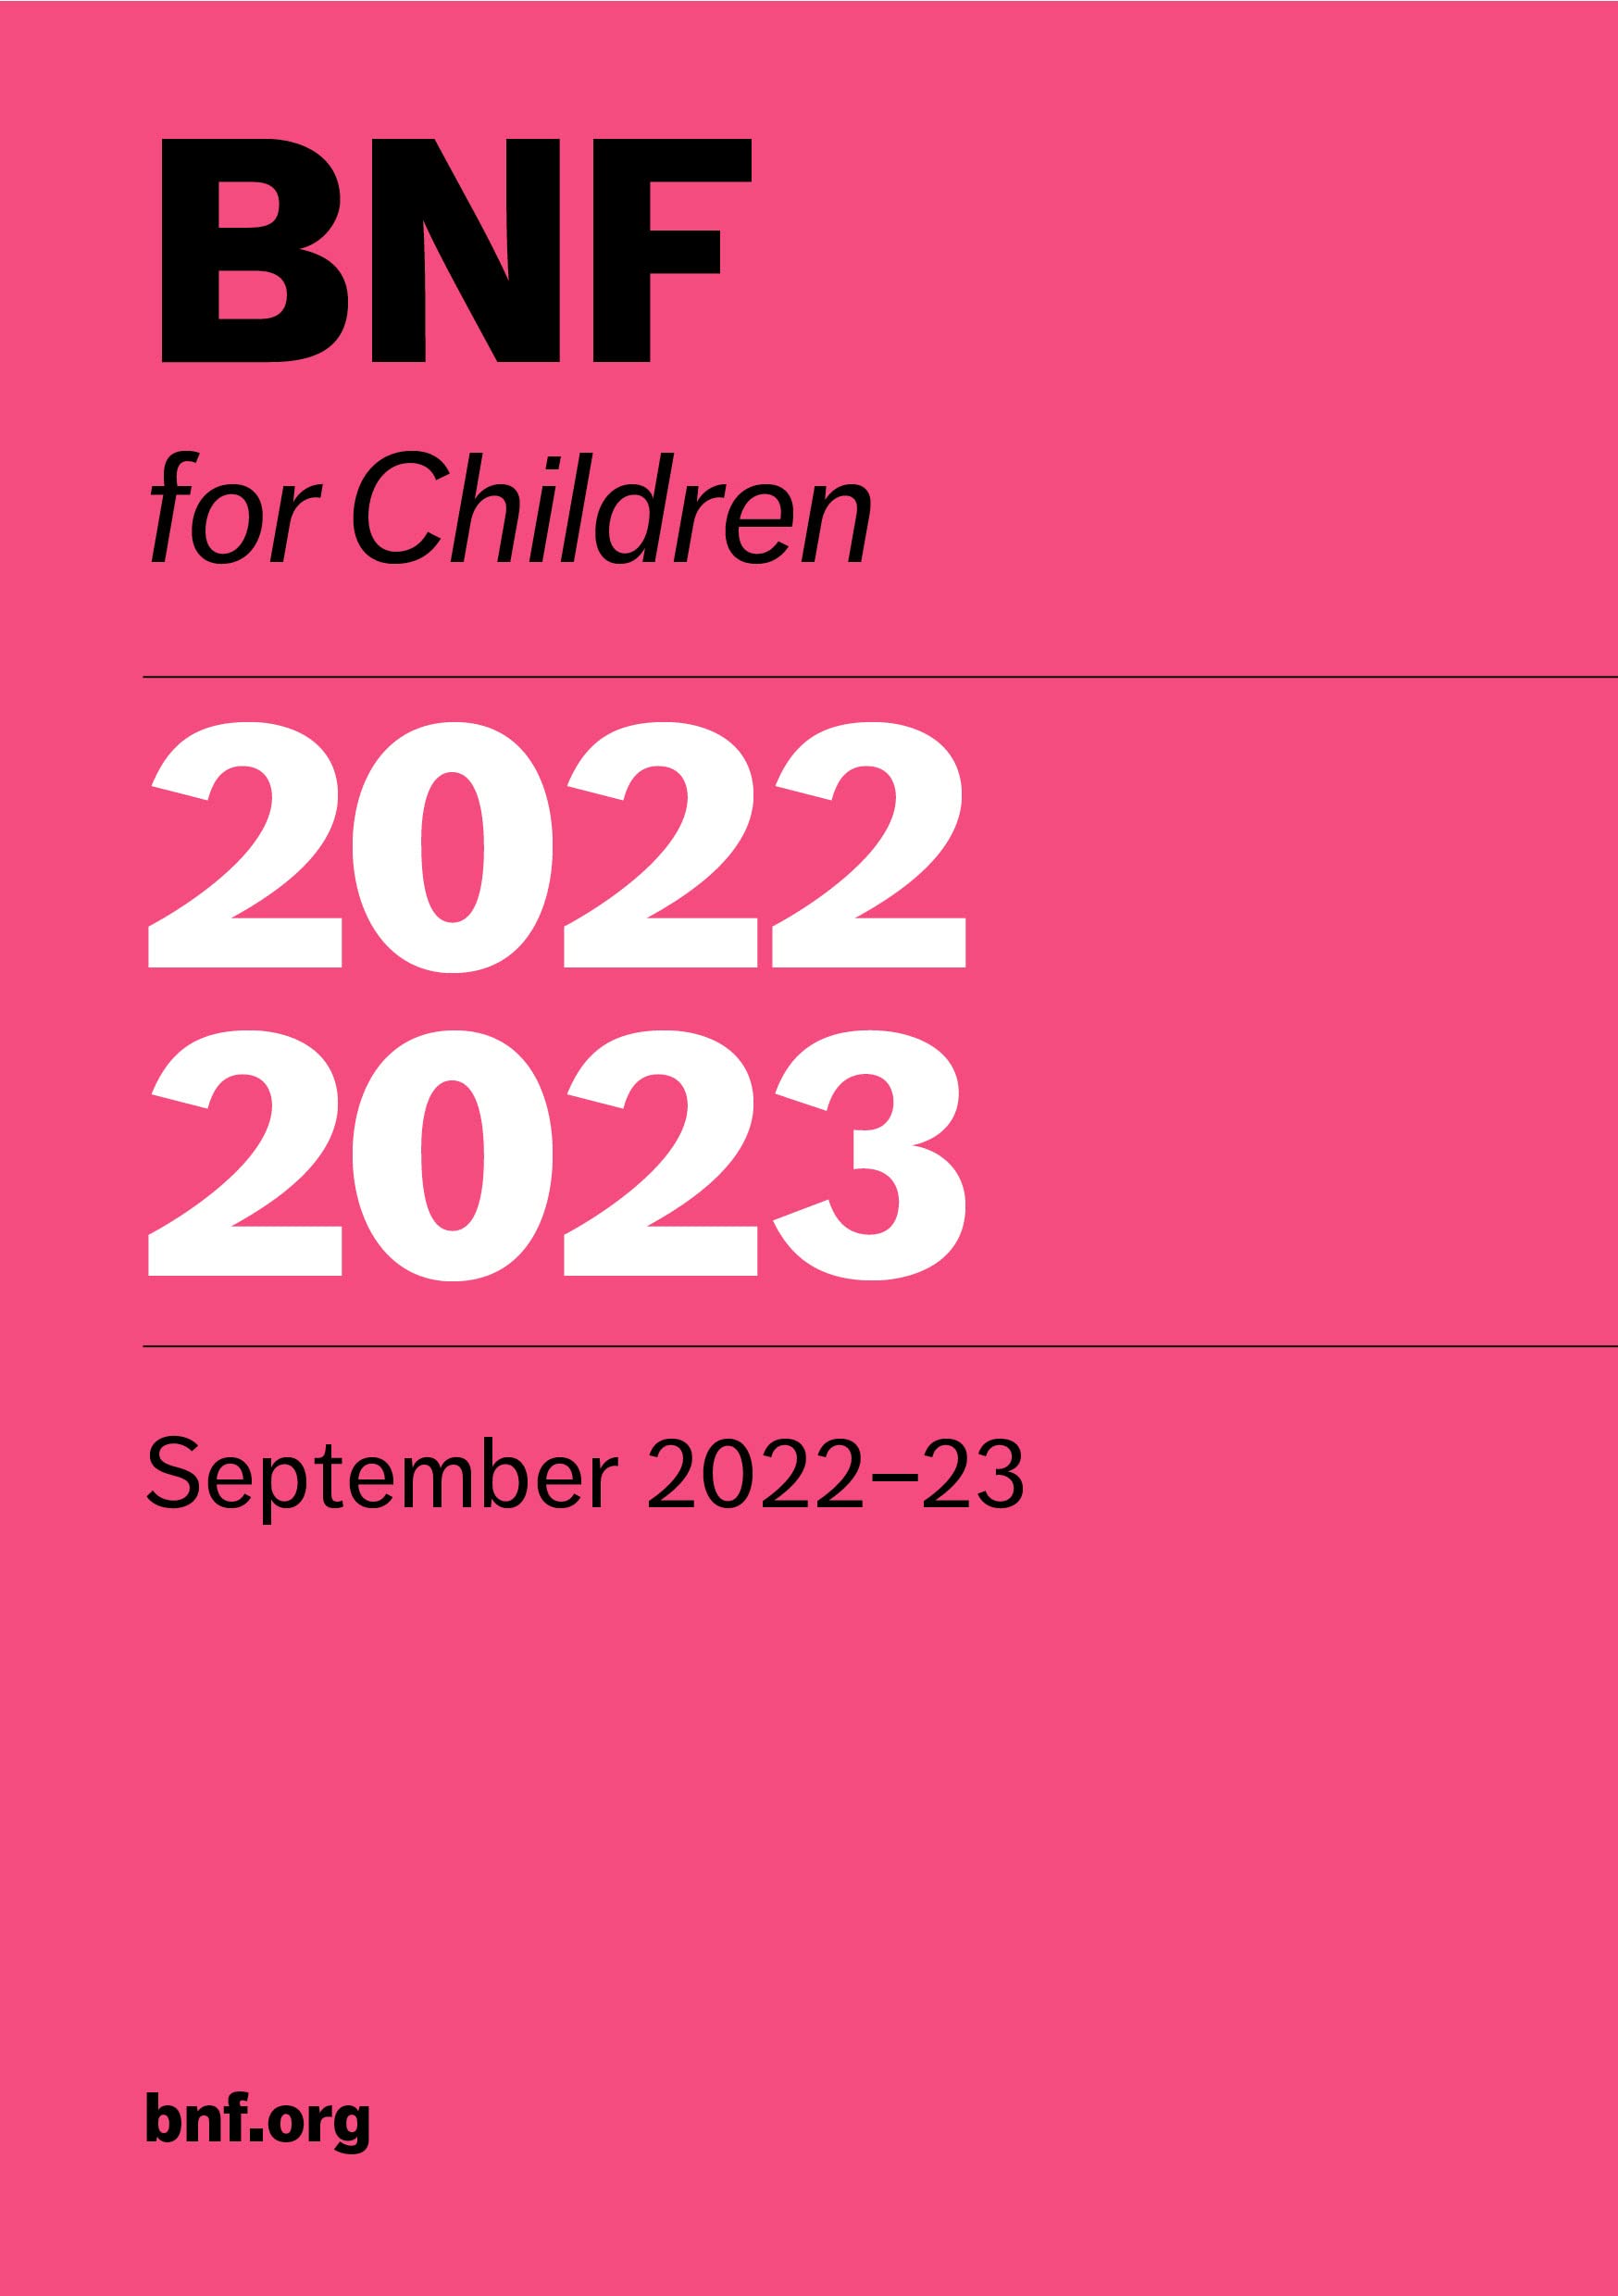 BNF for children 2022-2023: September 2022-23